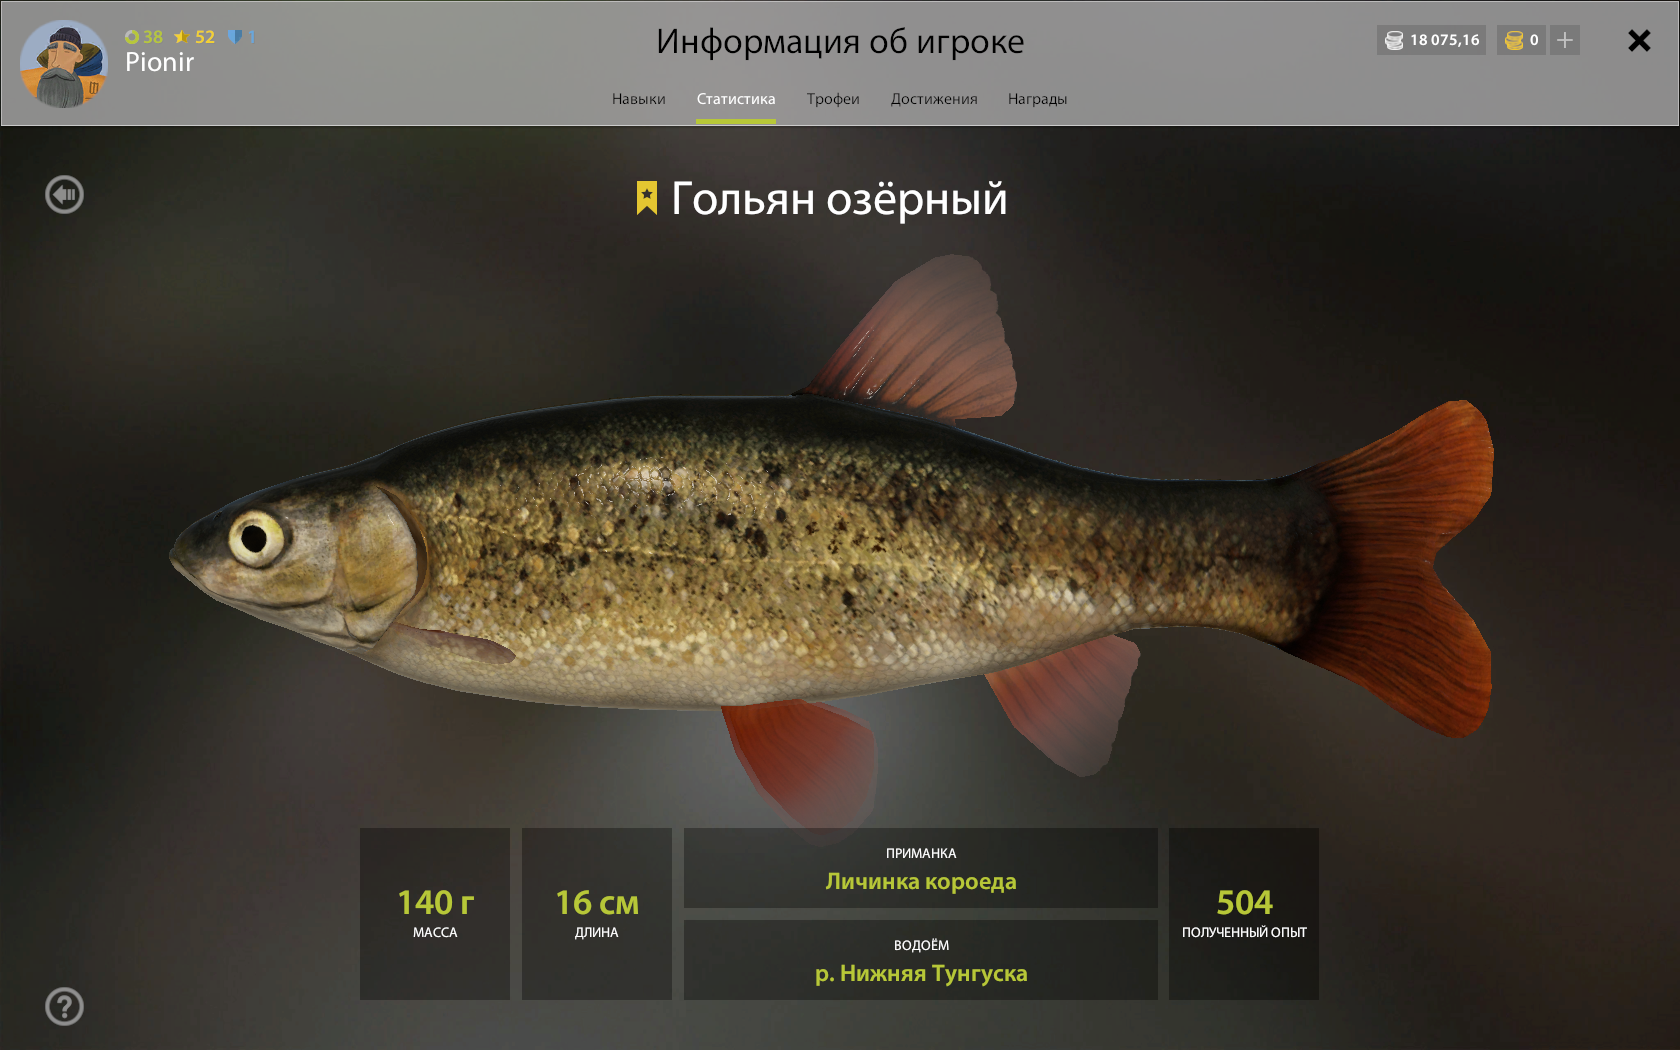 Рыба гольян: описание с фото, внешний вид, среда обитания, рыбалка